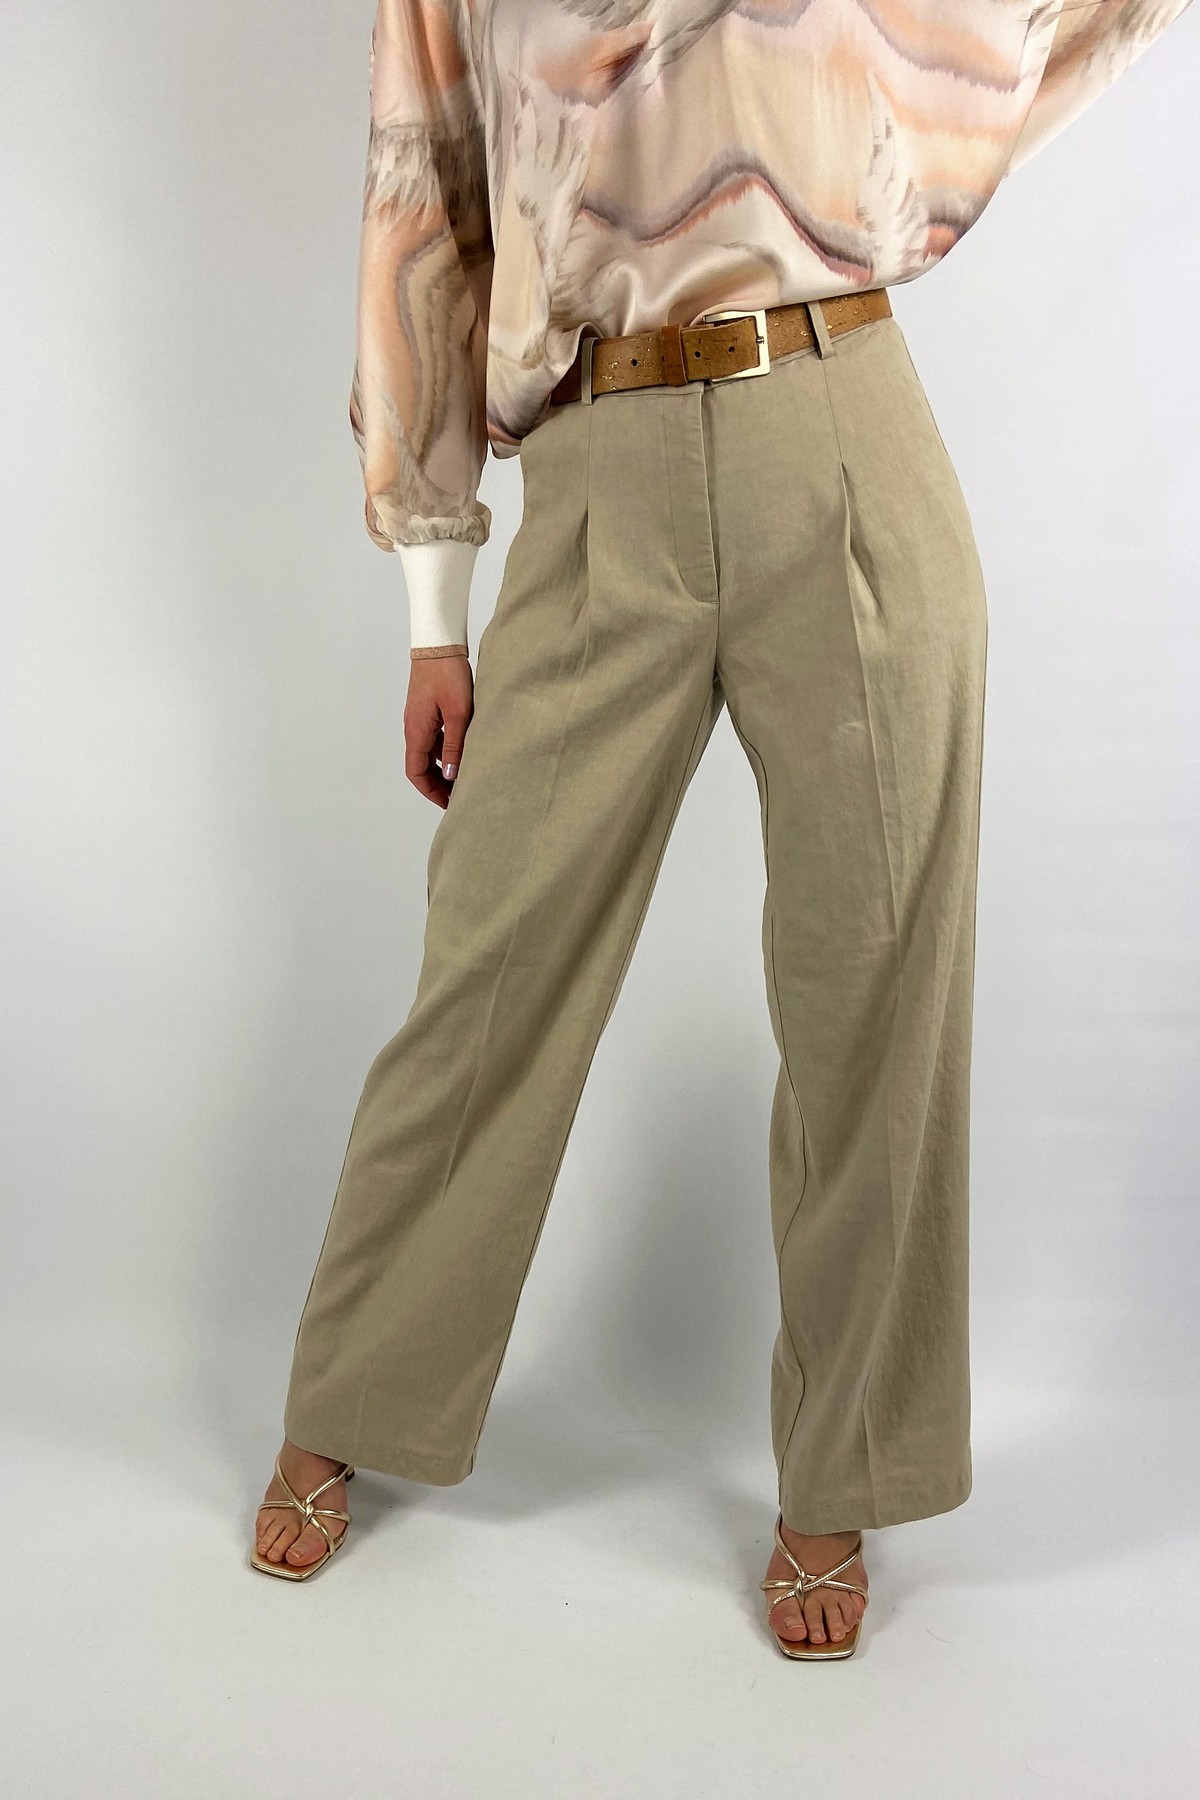 Broek linnen wijd in de kleur beige van het merk Cambio